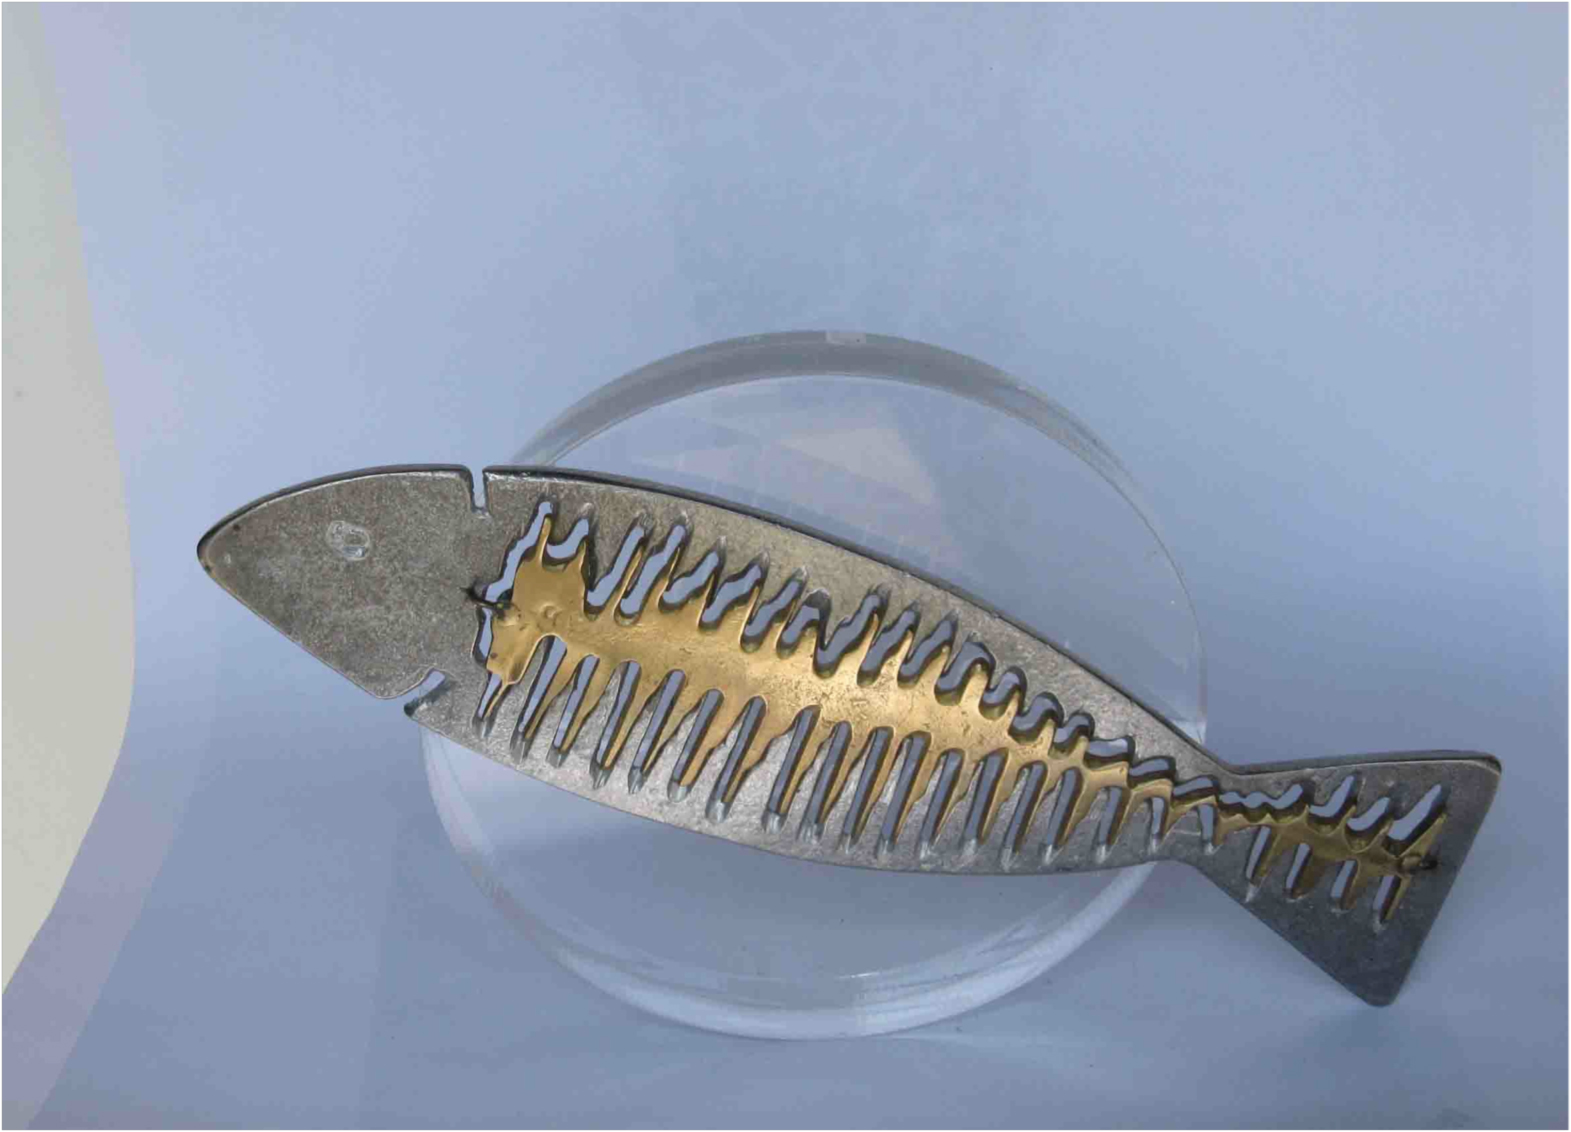 Soundfish (plexi glass)